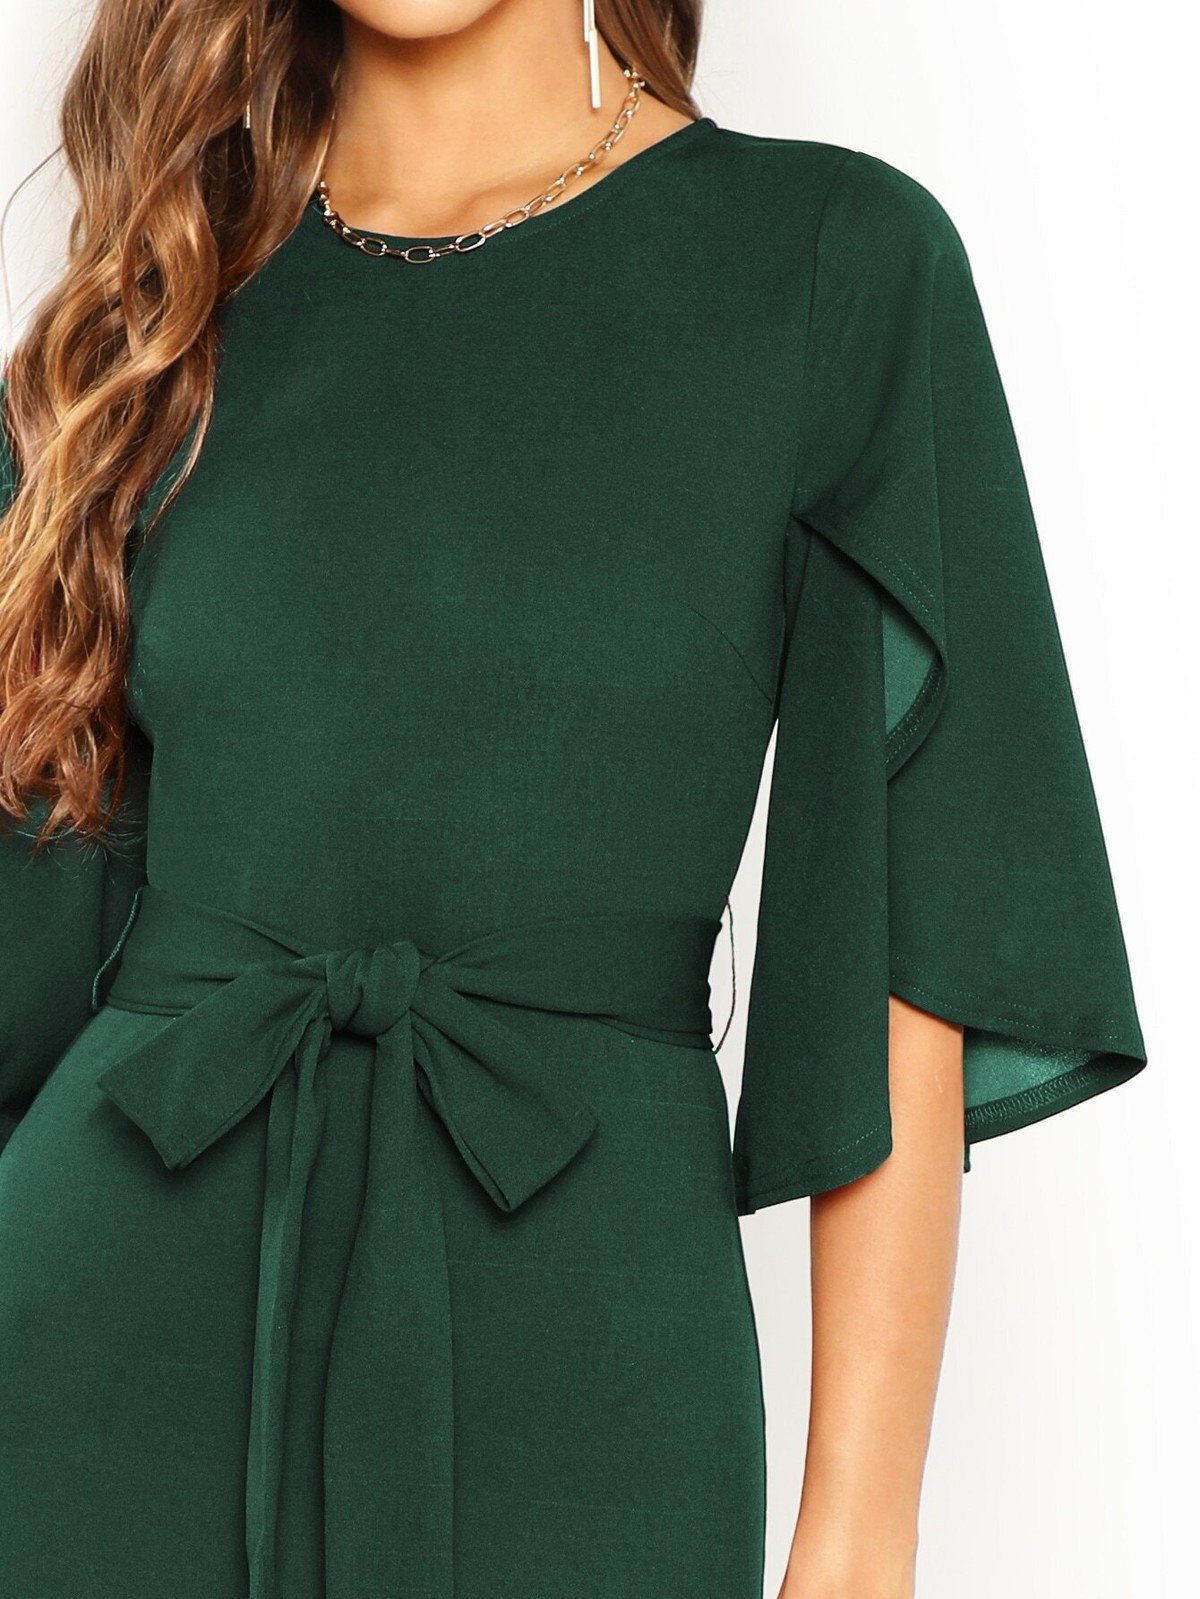 Красивые рукава для платья. Шеин зеленое платье. Платье с рукавами. Необычные рукава на платье.